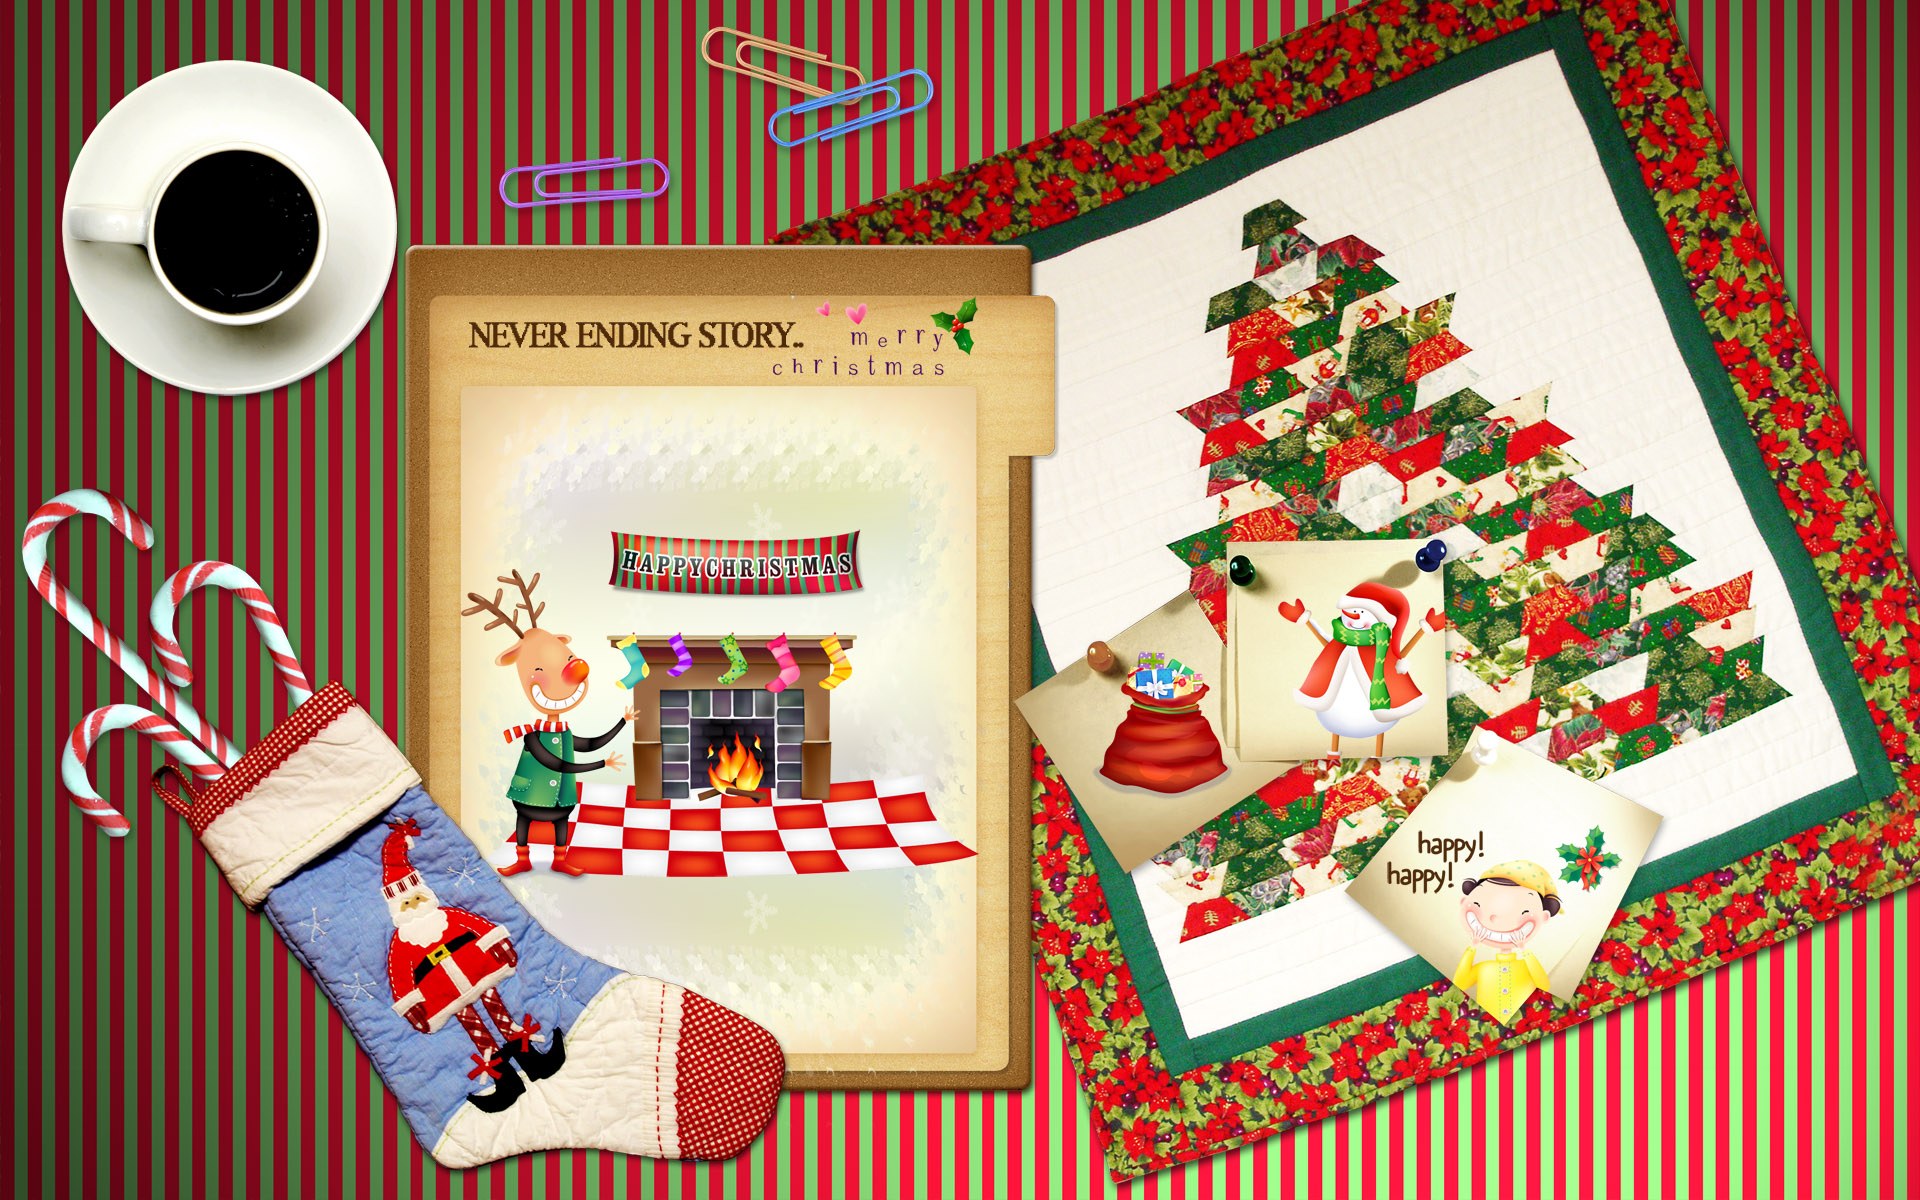 壁纸1920x1200可爱温馨圣诞插画宽屏壁纸 壁纸15壁纸 可爱温馨圣诞插画宽屏壁纸 可爱温馨圣诞插画宽屏图片 可爱温馨圣诞插画宽屏素材 系统壁纸 系统图库 系统图片素材桌面壁纸